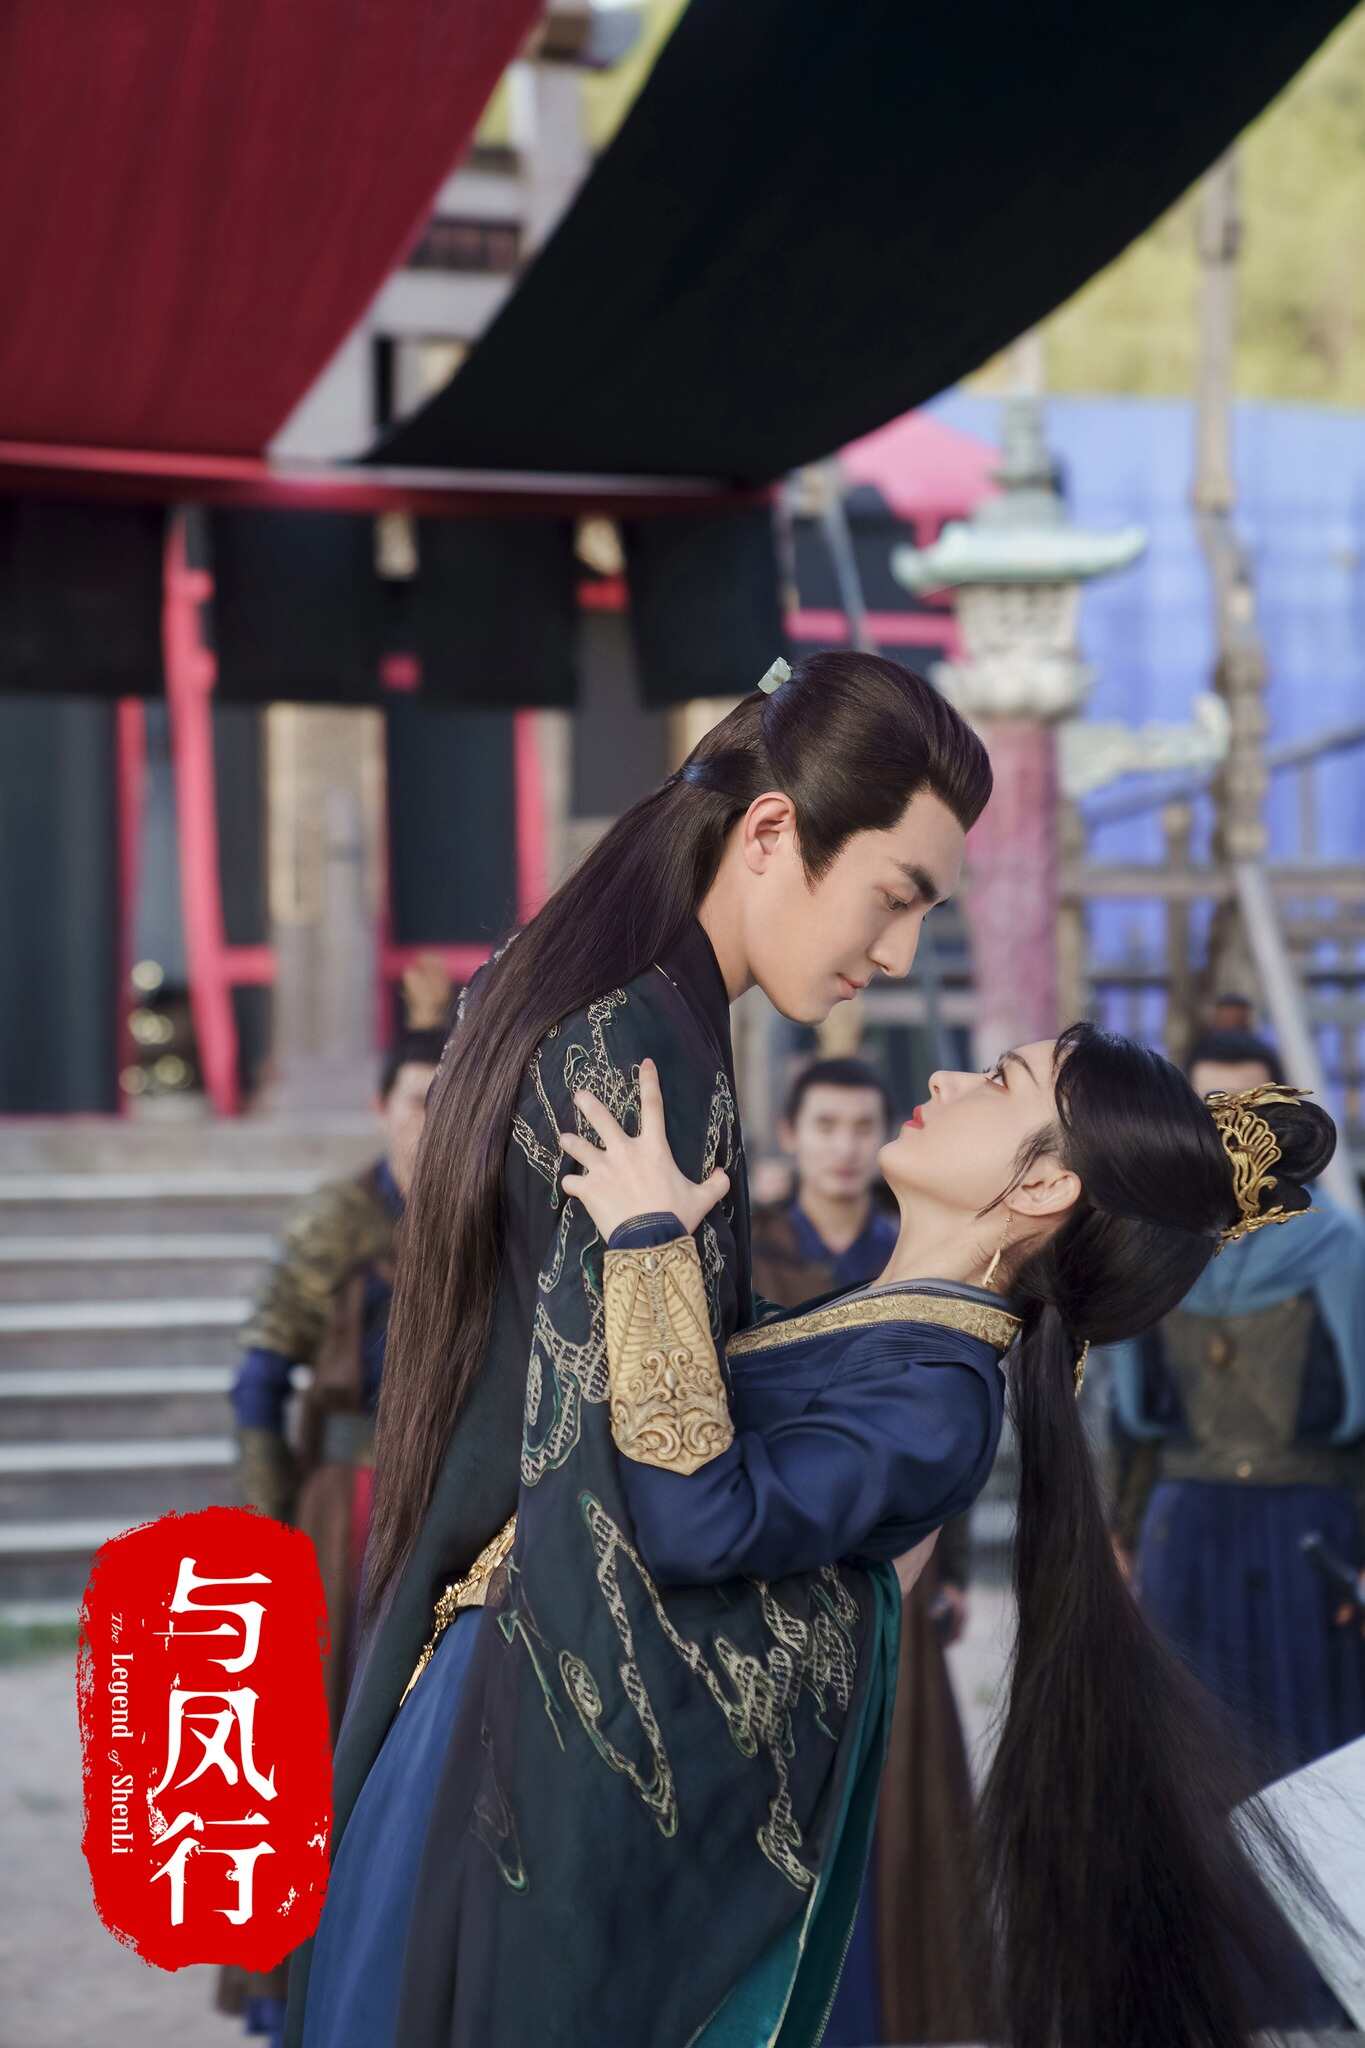 “Dữ phượng hành” gây tranh cãi vì chất lượng nội dung cũng như diễn xuất của Triệu Lệ Dĩnh, Lâm Canh Tân. Ảnh: Weibo